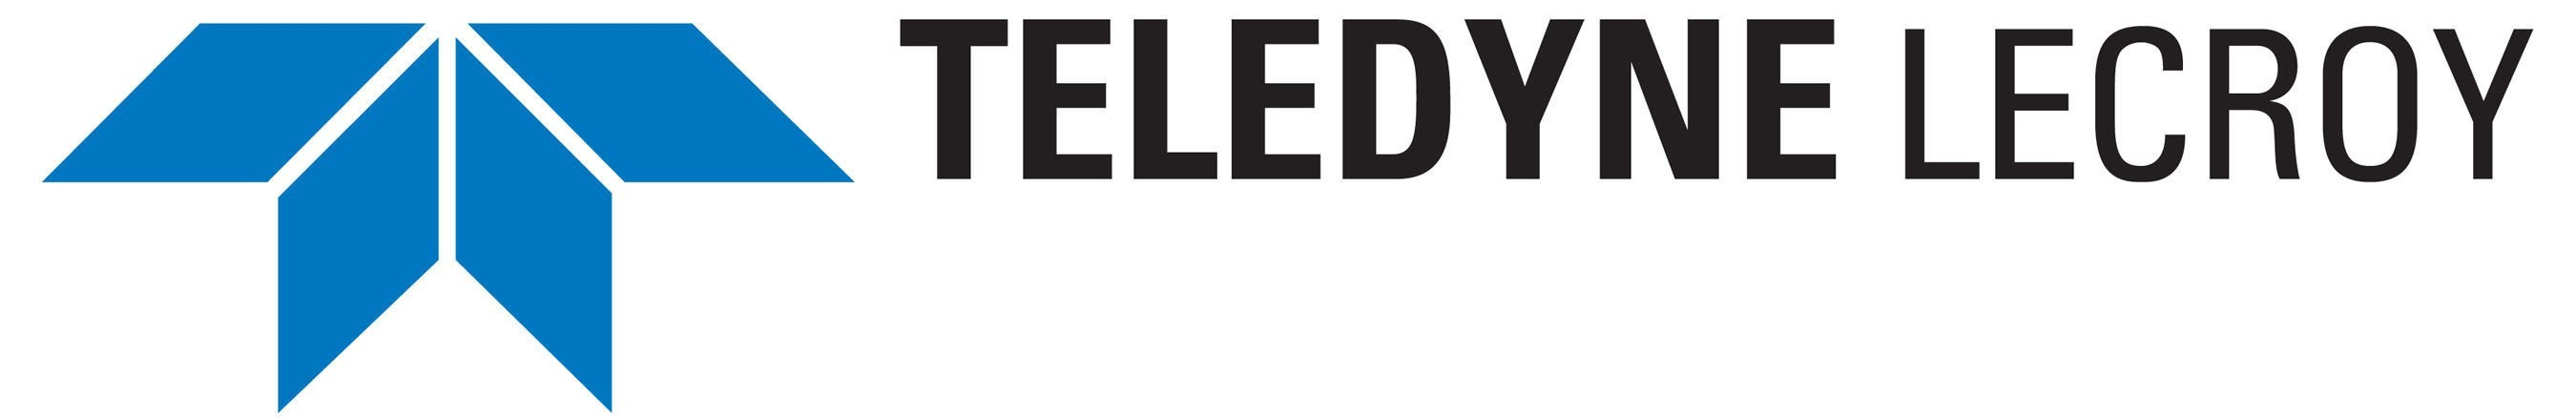 LeCroy logo